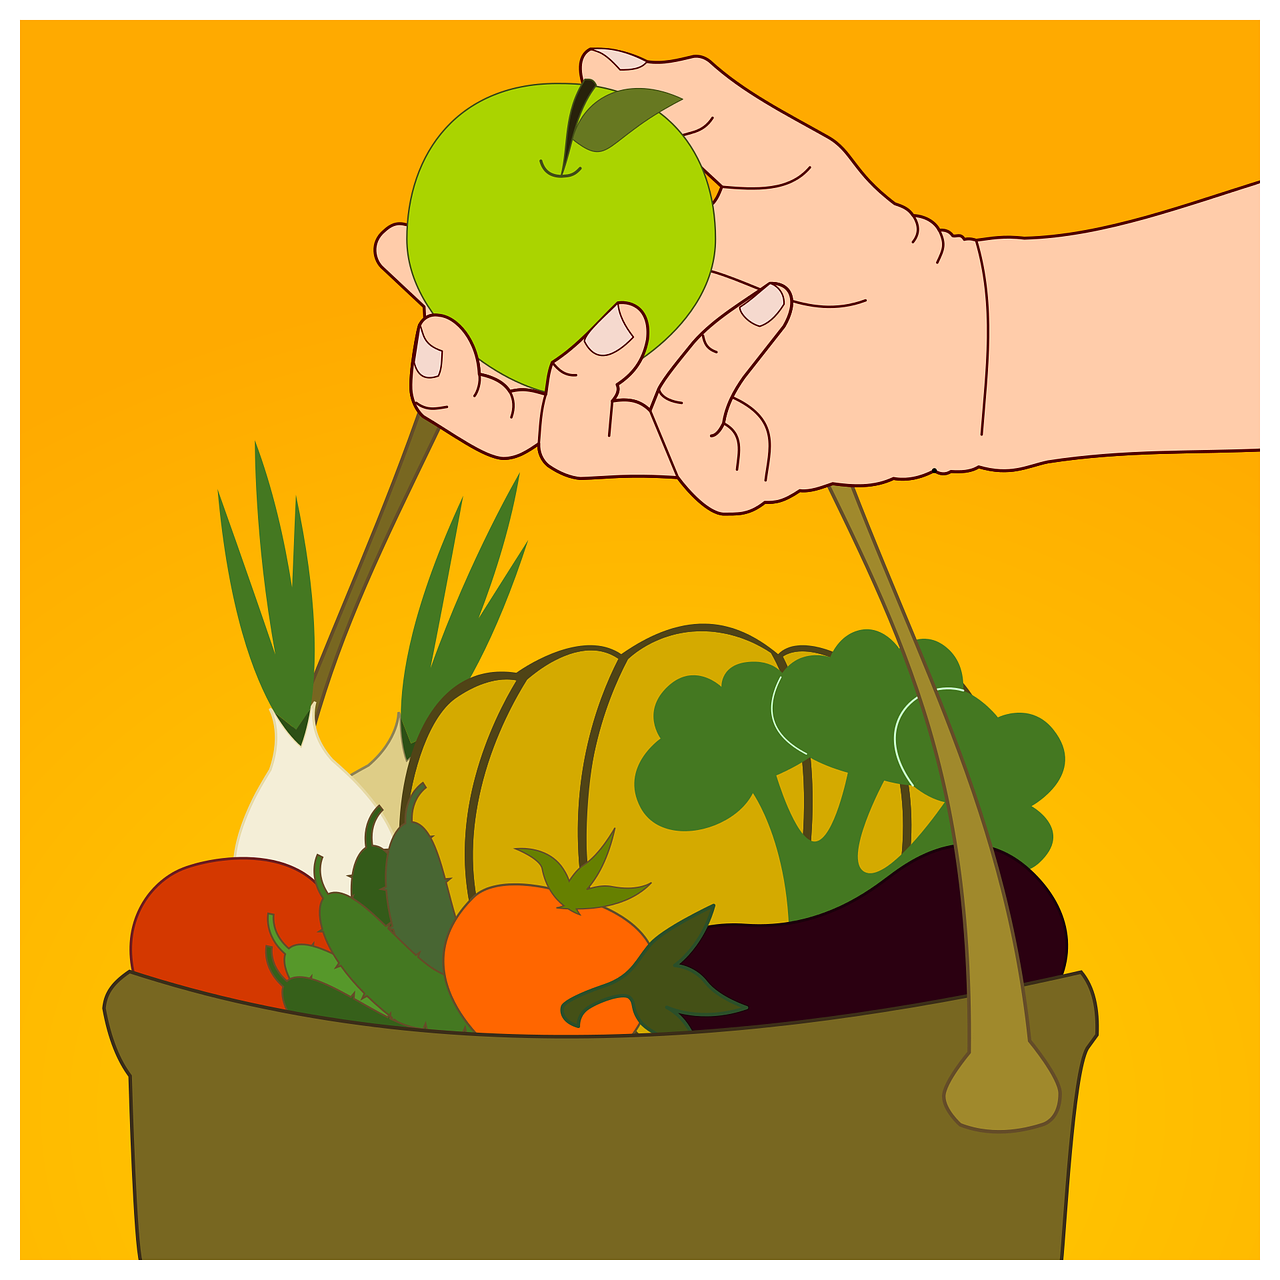 hand holding bag with food - broccoli, apple, tomato, potatoes